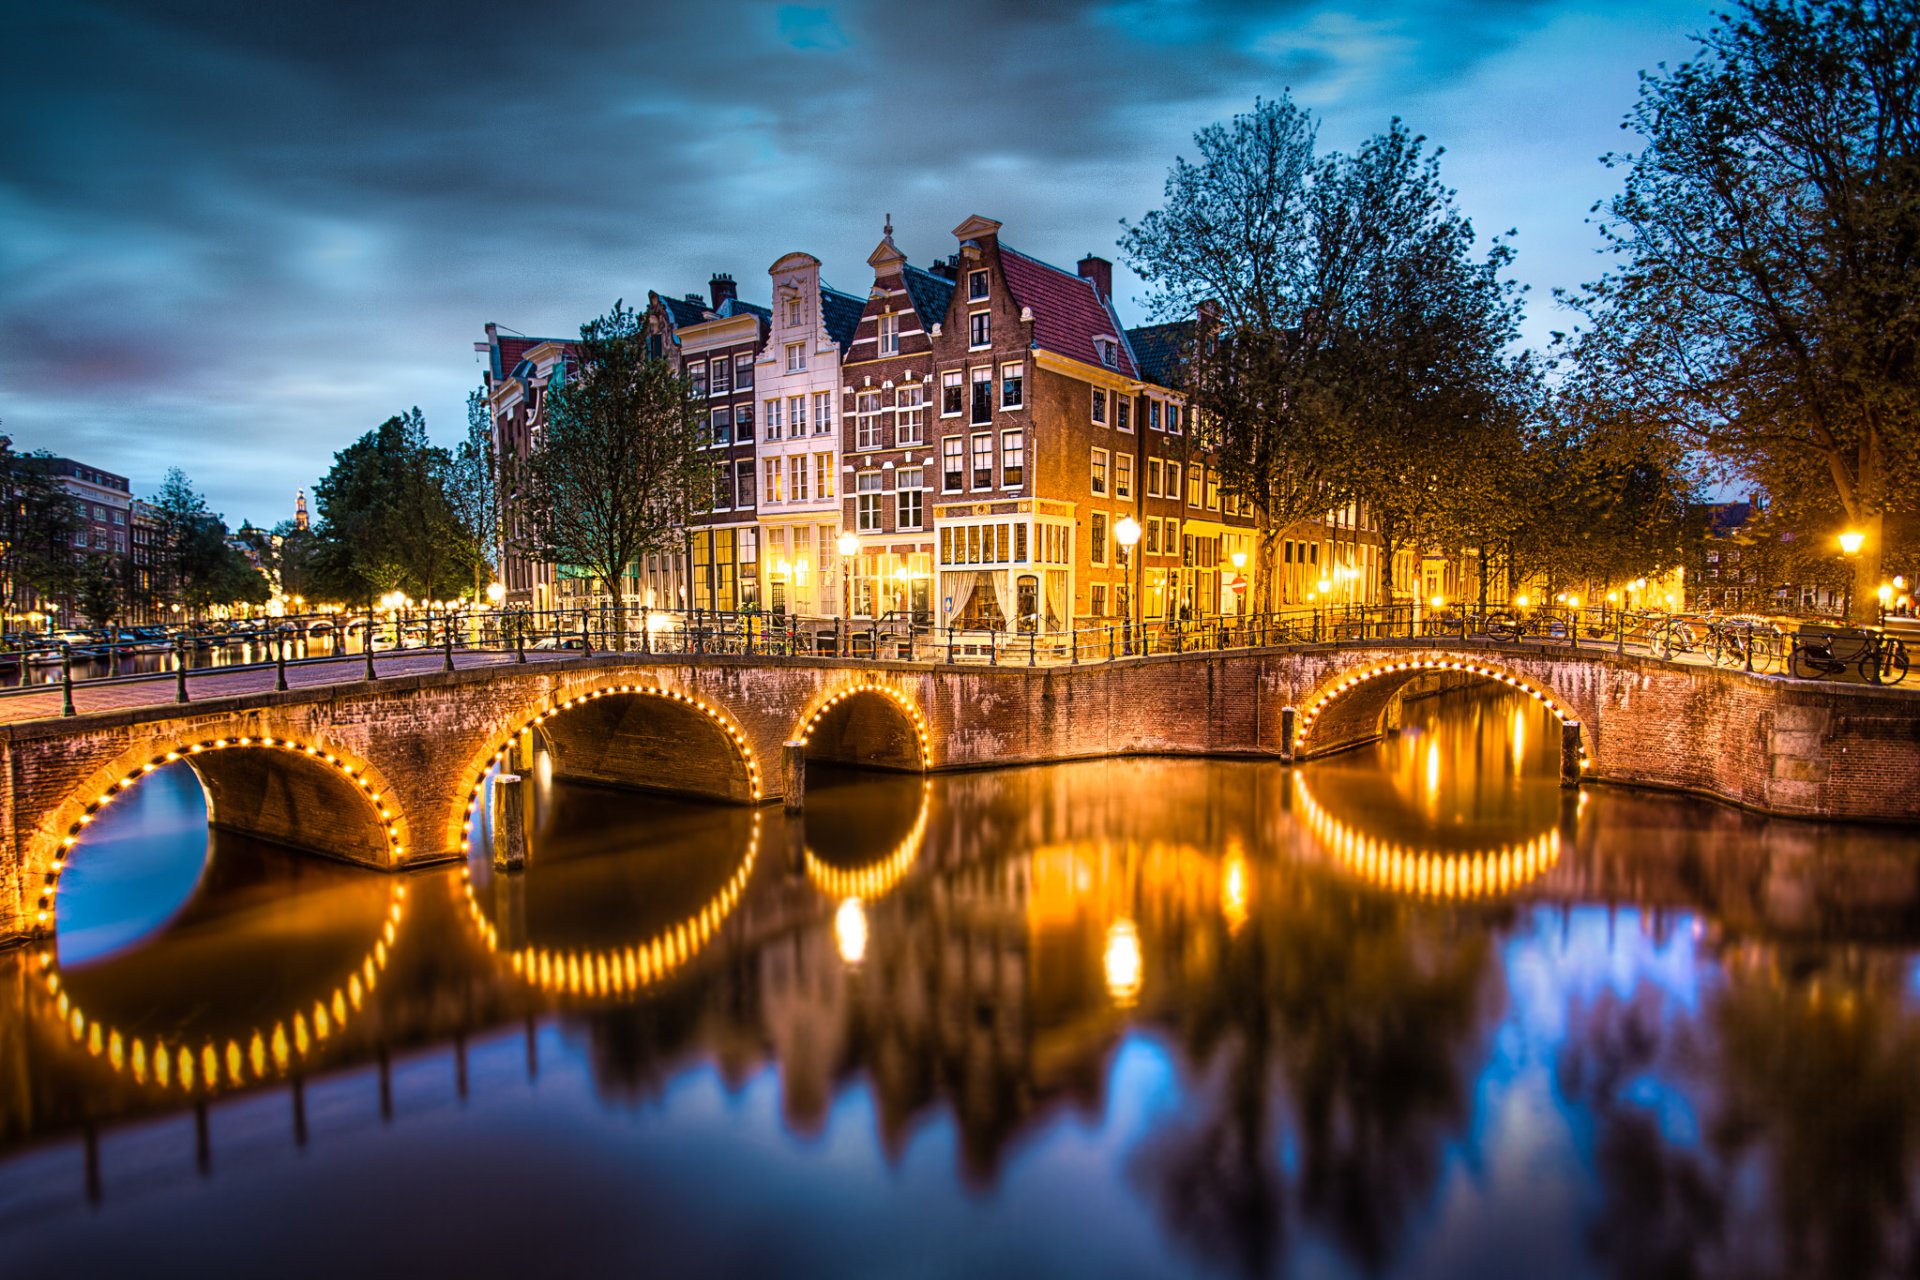 амстердам нидерланды город вечер небо тучи канал мост огни освещение река вода отражение дома улицы фонари деревья